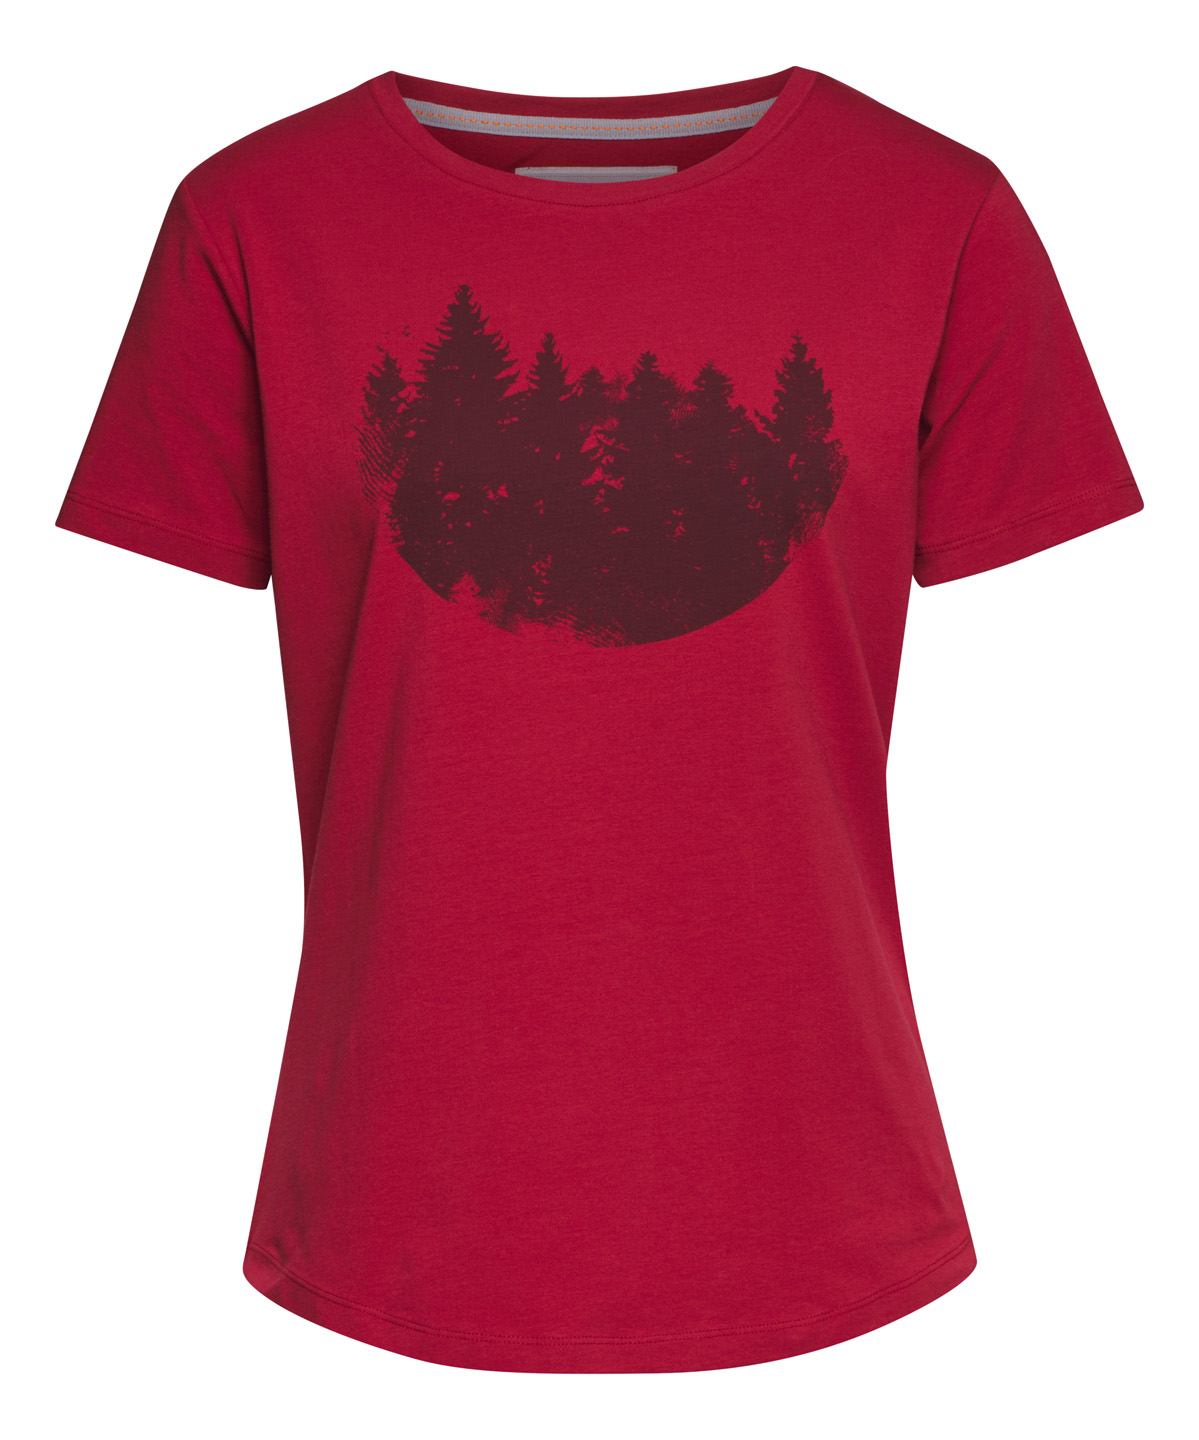 T-Shirt FIR FOREST